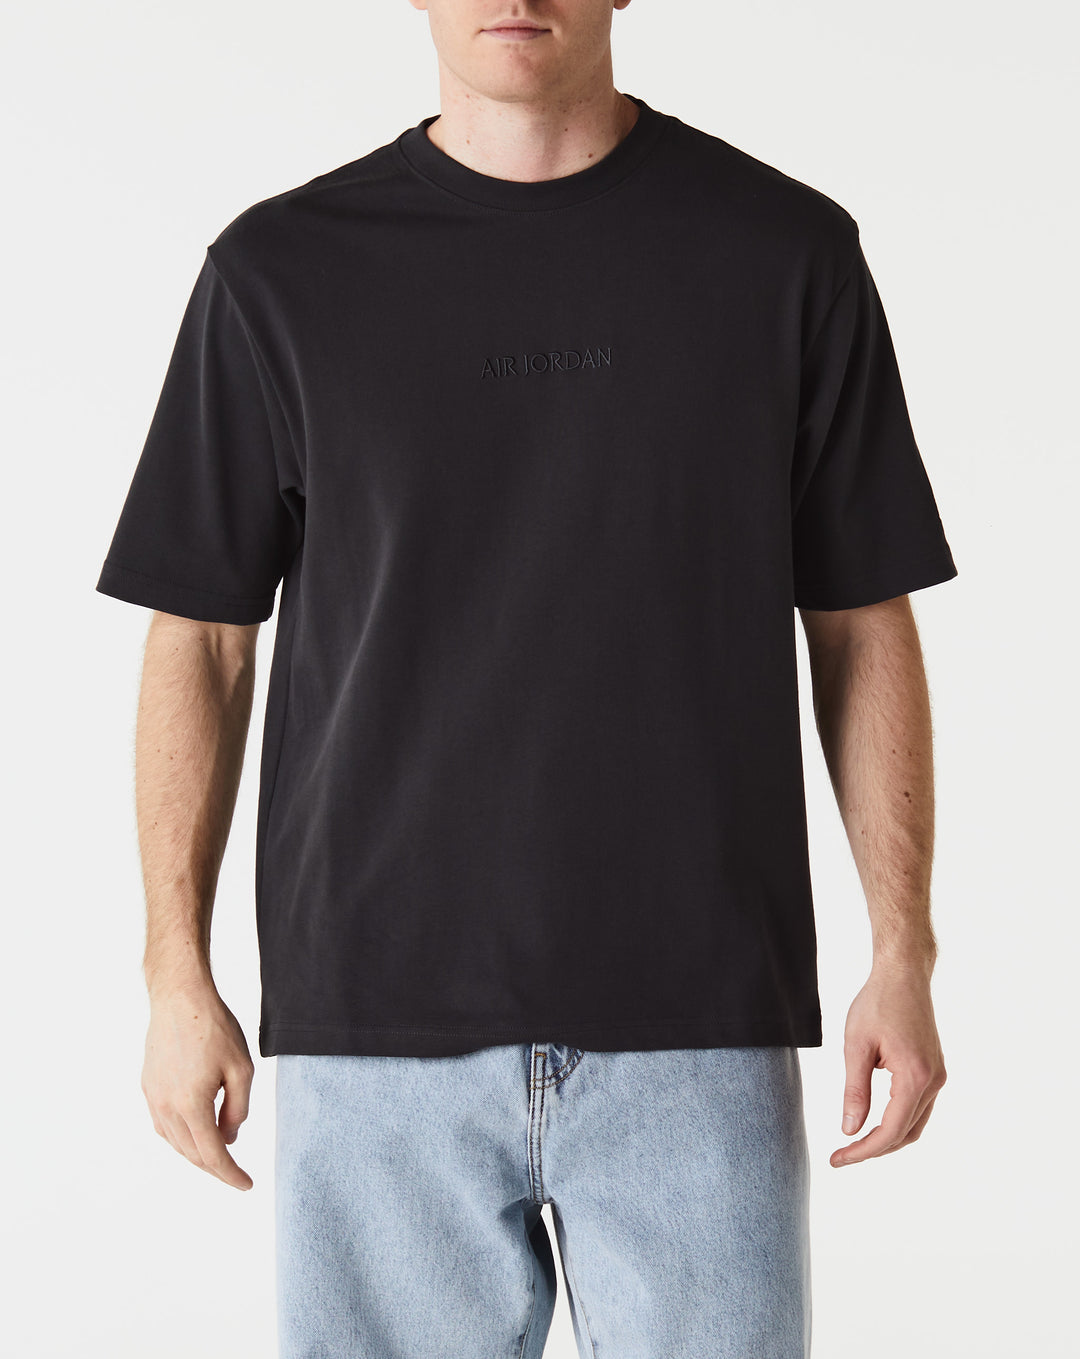 Air Jordan Woodmark T-Shirt  - XHIBITION